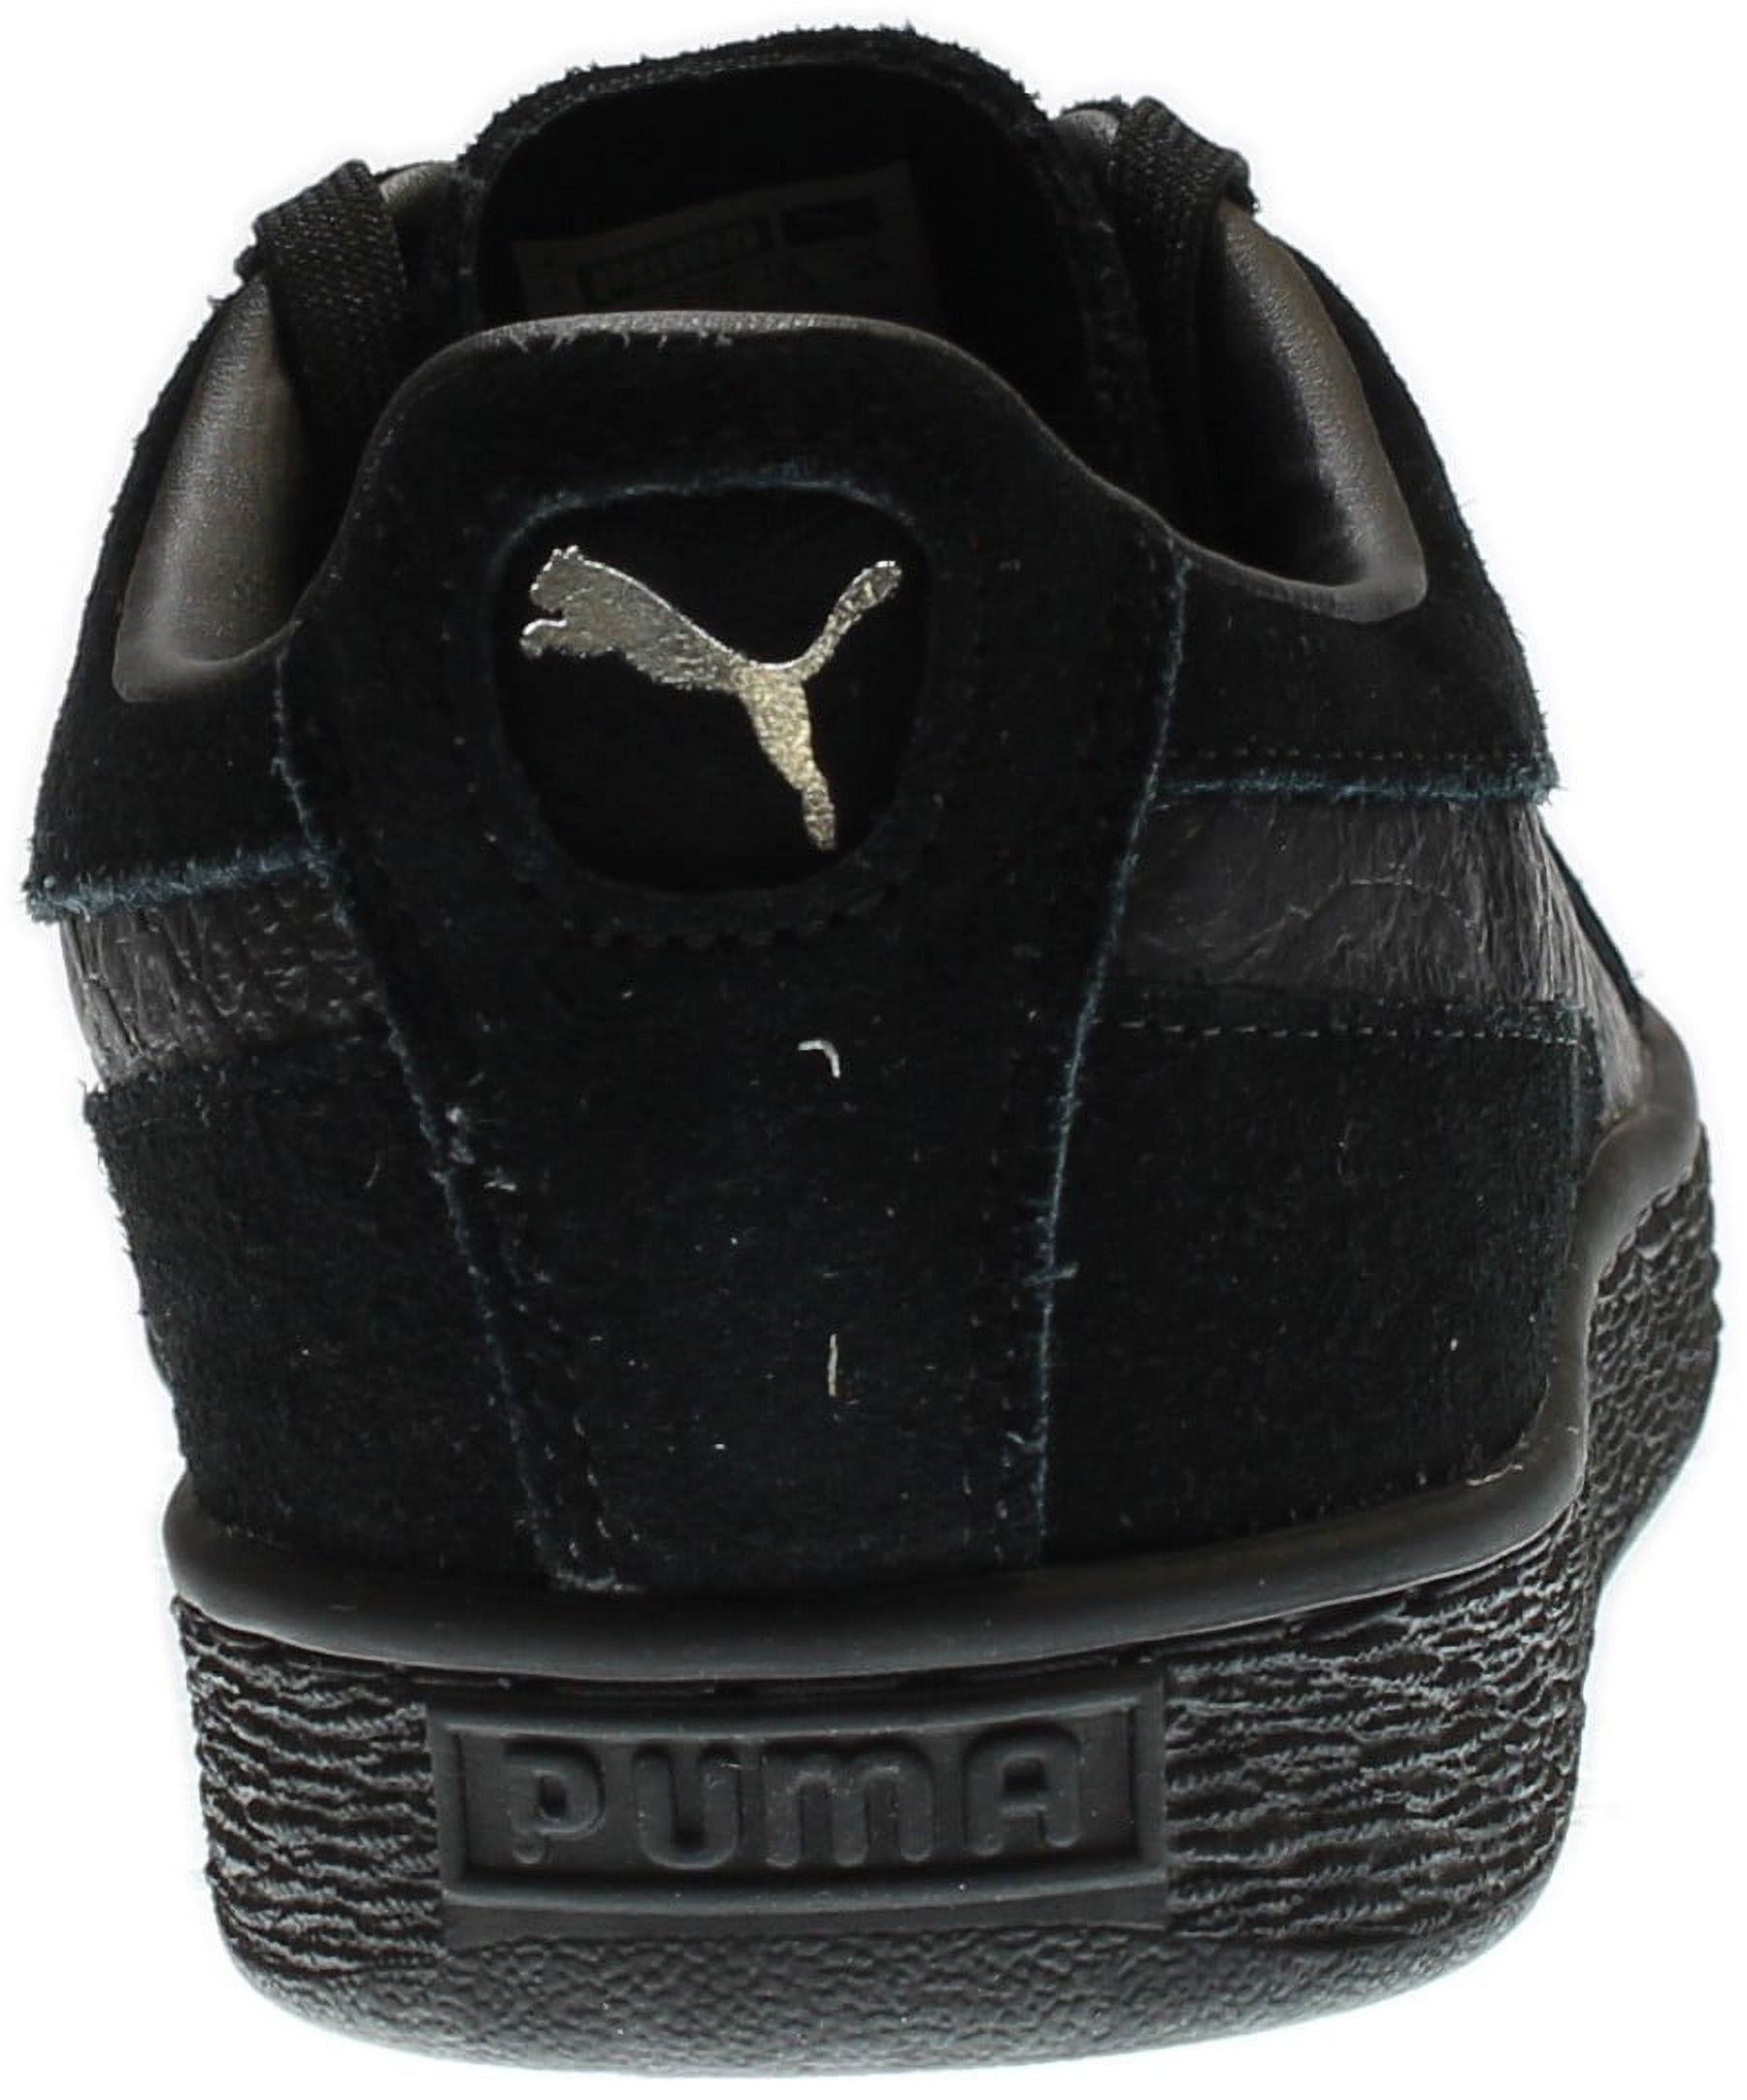 PUMA 363164-06 : Men's Suede Classic Mono Reptile Fashion Sneaker, Black (Puma Black-puma Silv, 9 D(M) US) - image 3 of 7